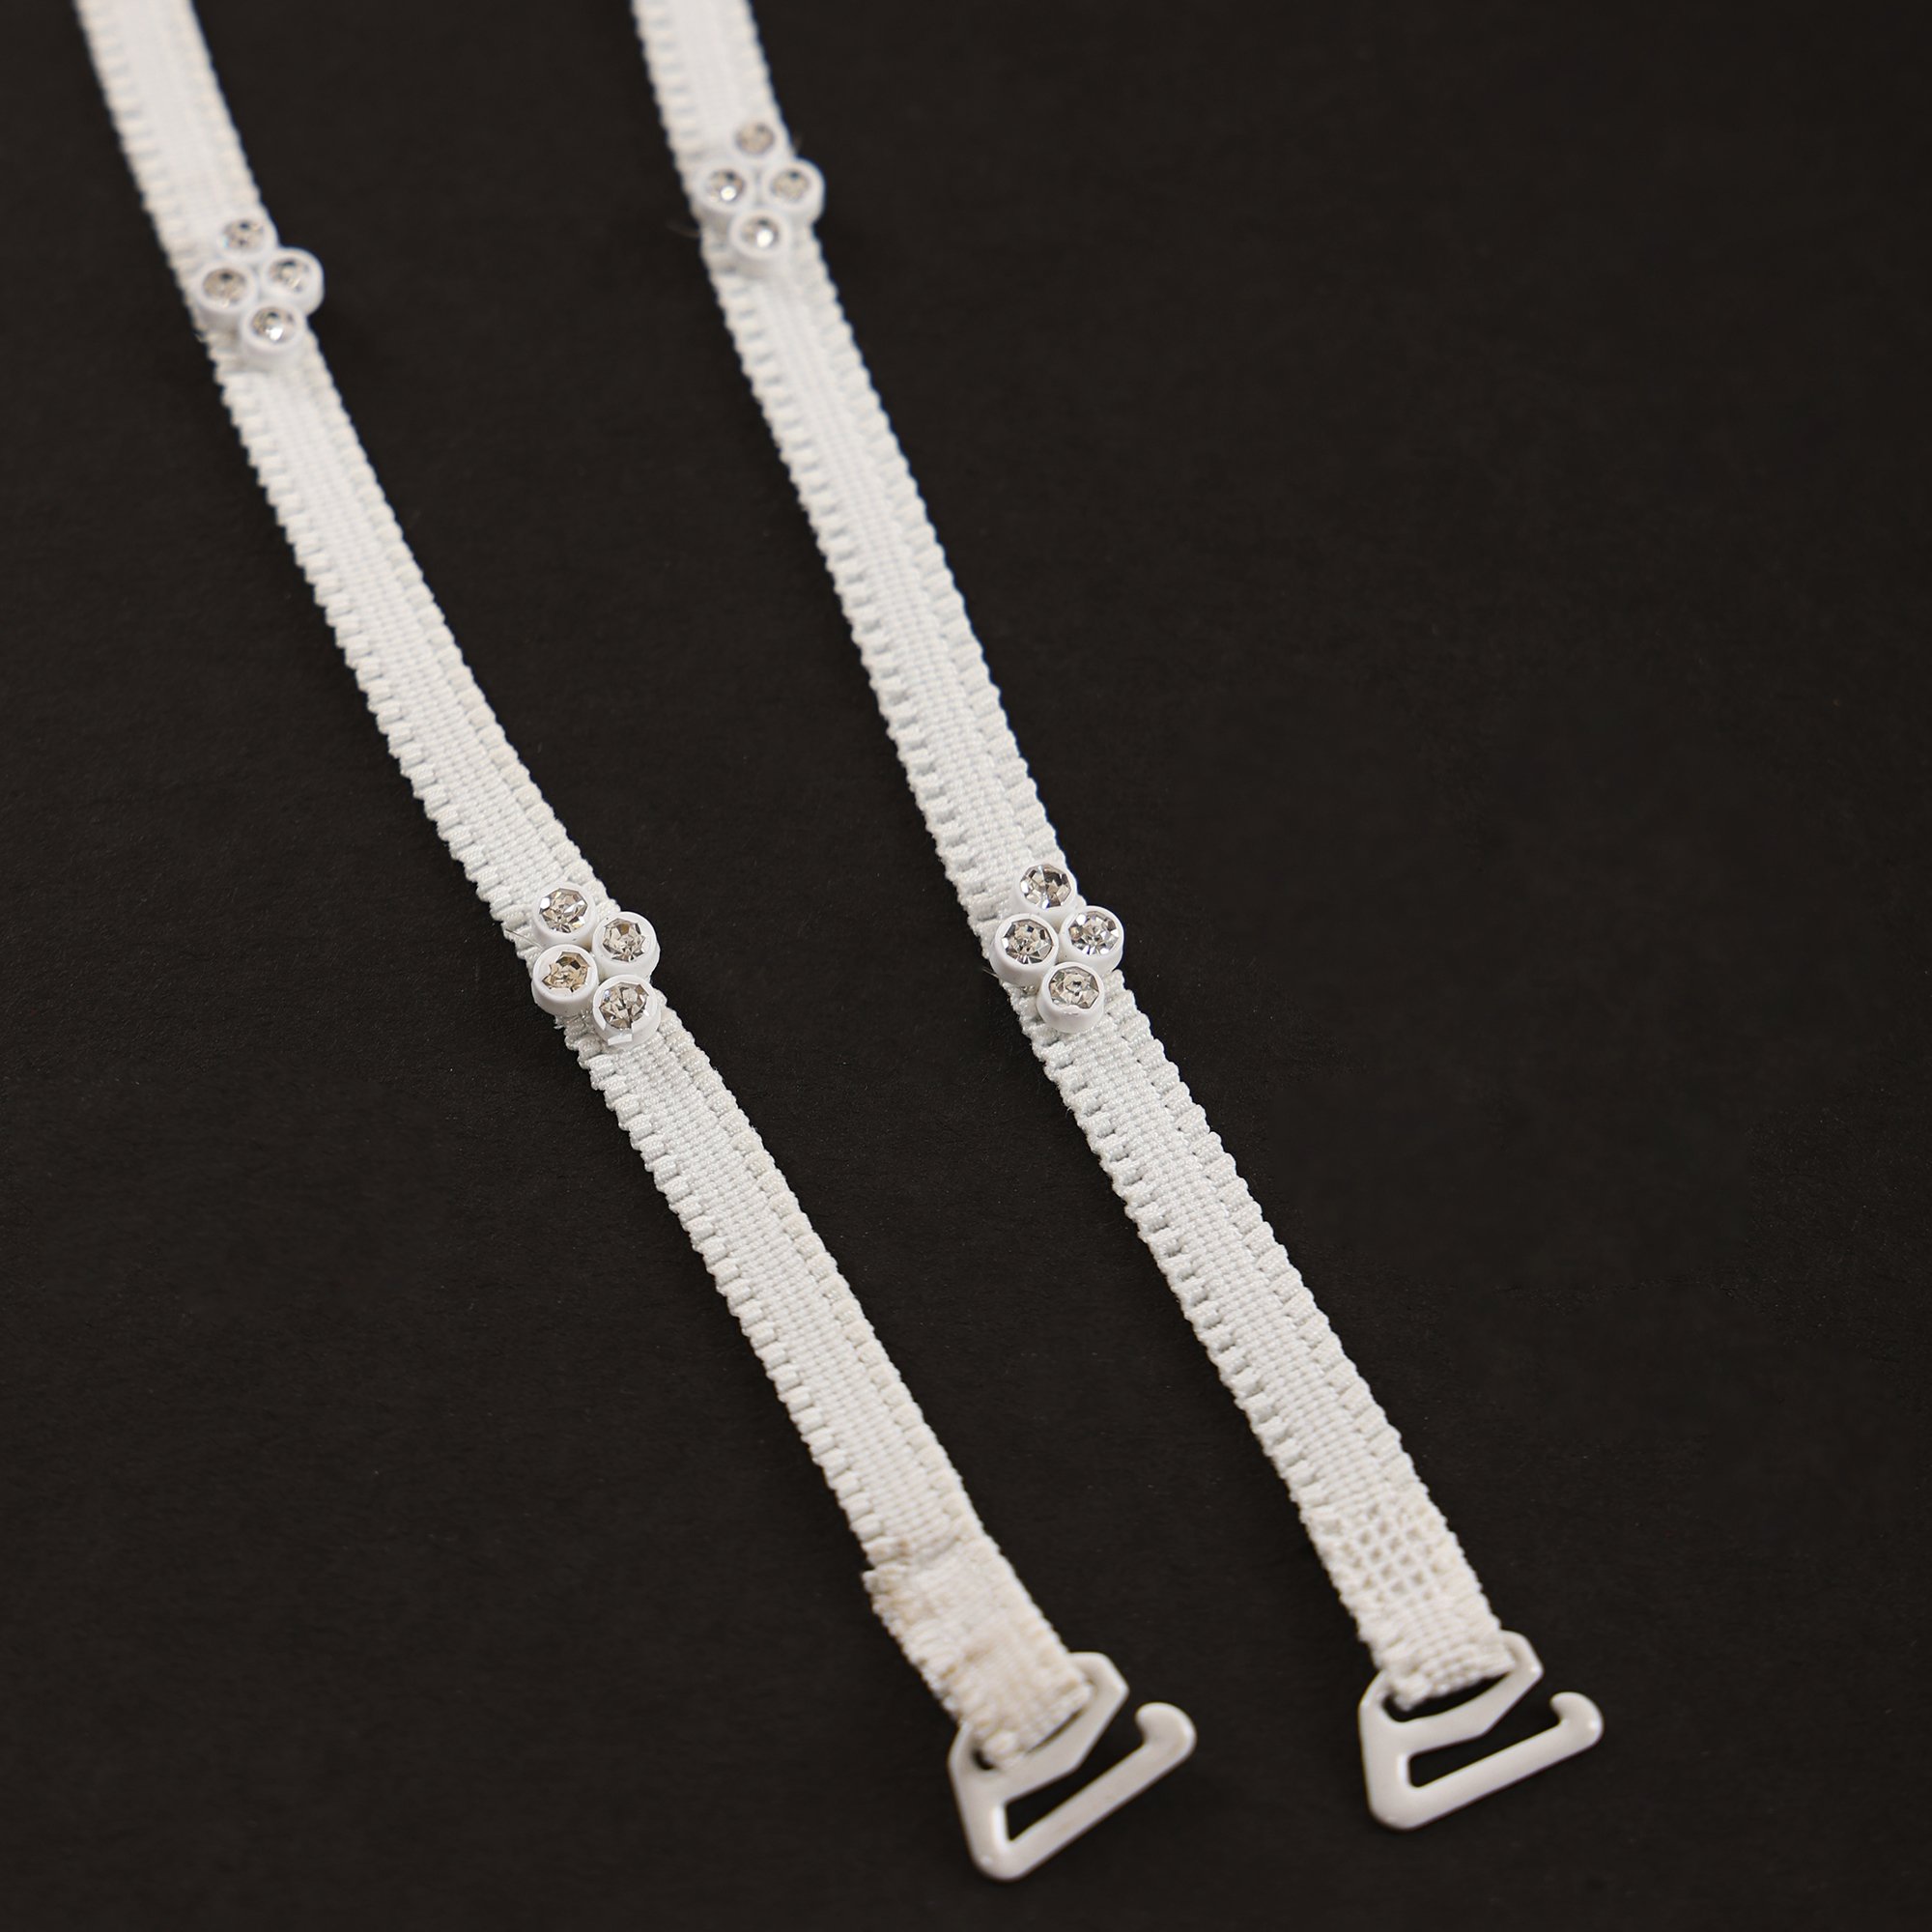 rhinestone bra straps 2 rows – All There Boutique